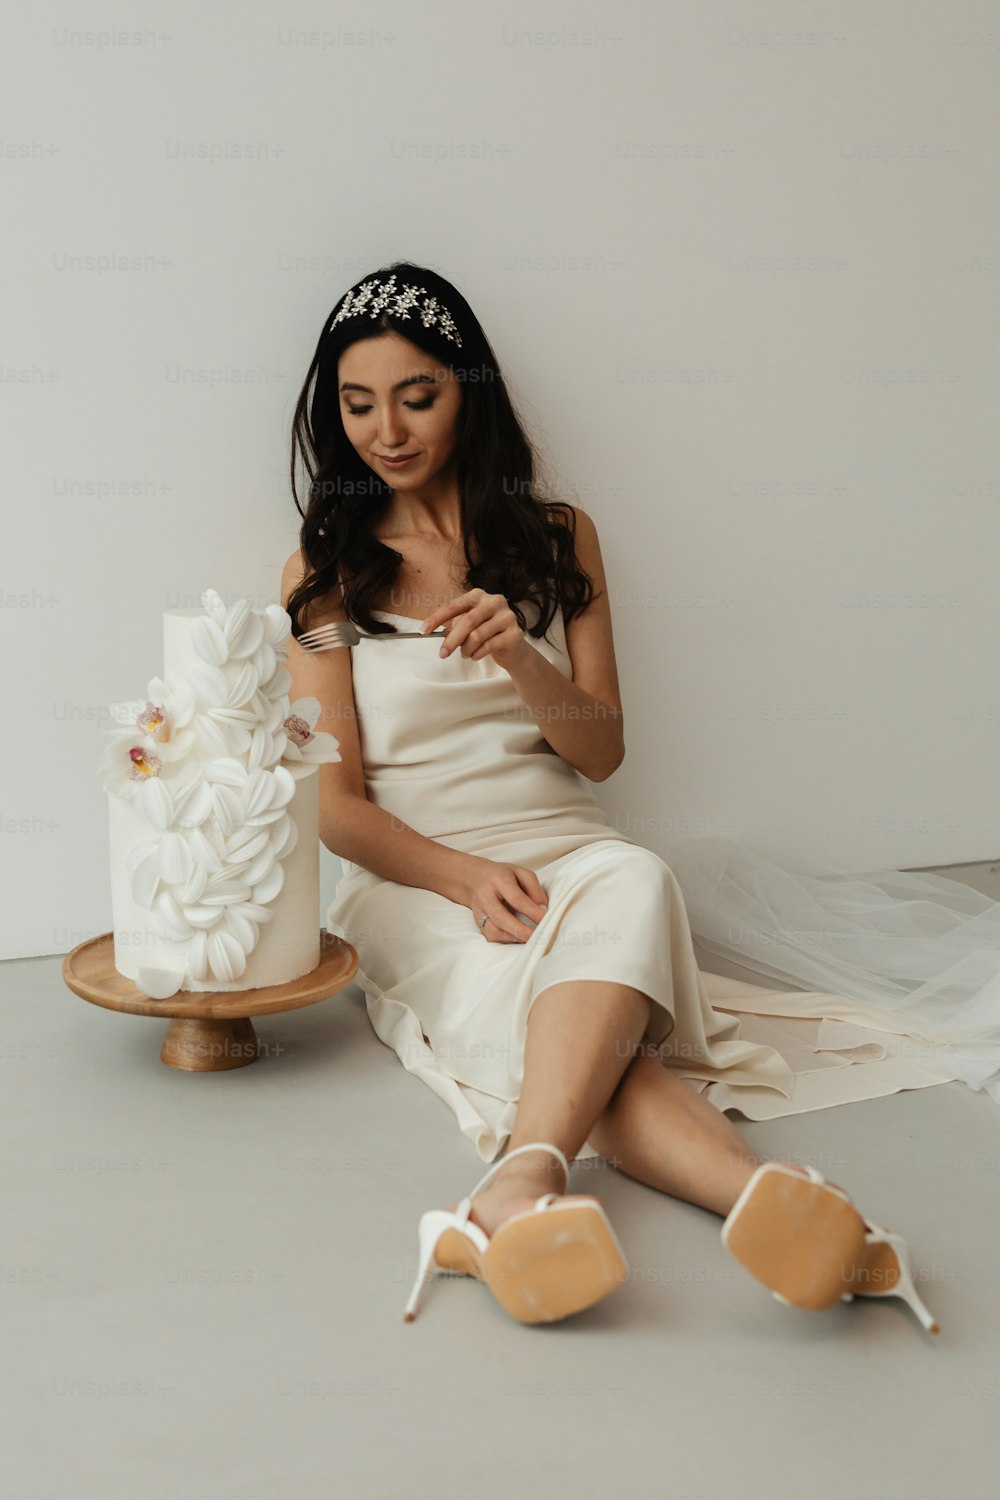 케이크 옆에 앉아 있는 하얀 드레스를 �입은 여자